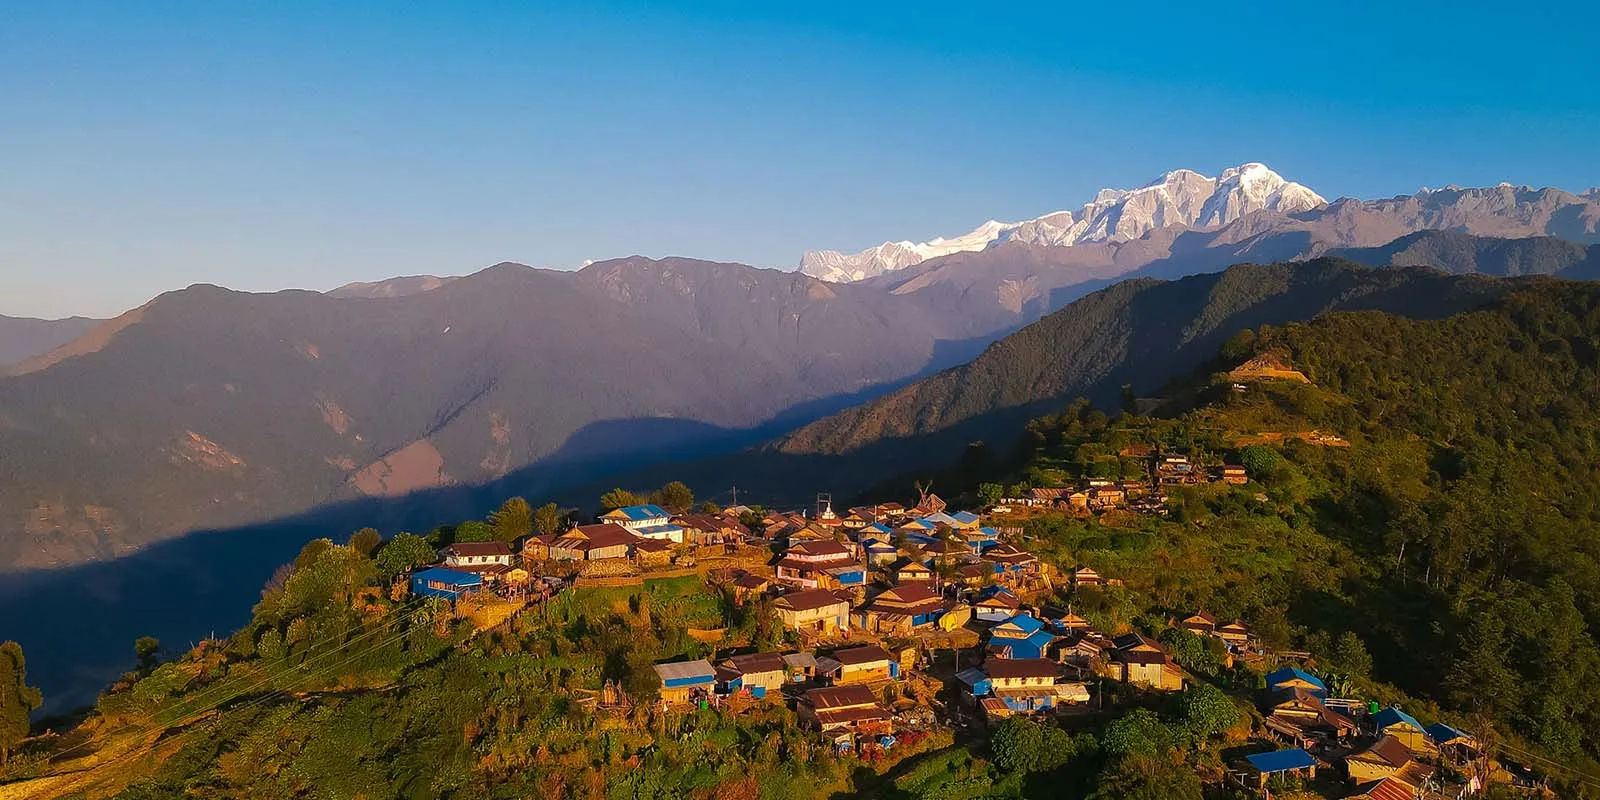 Kathmandu - Besisahar [800 m/2624]: 8-9 hrs drive